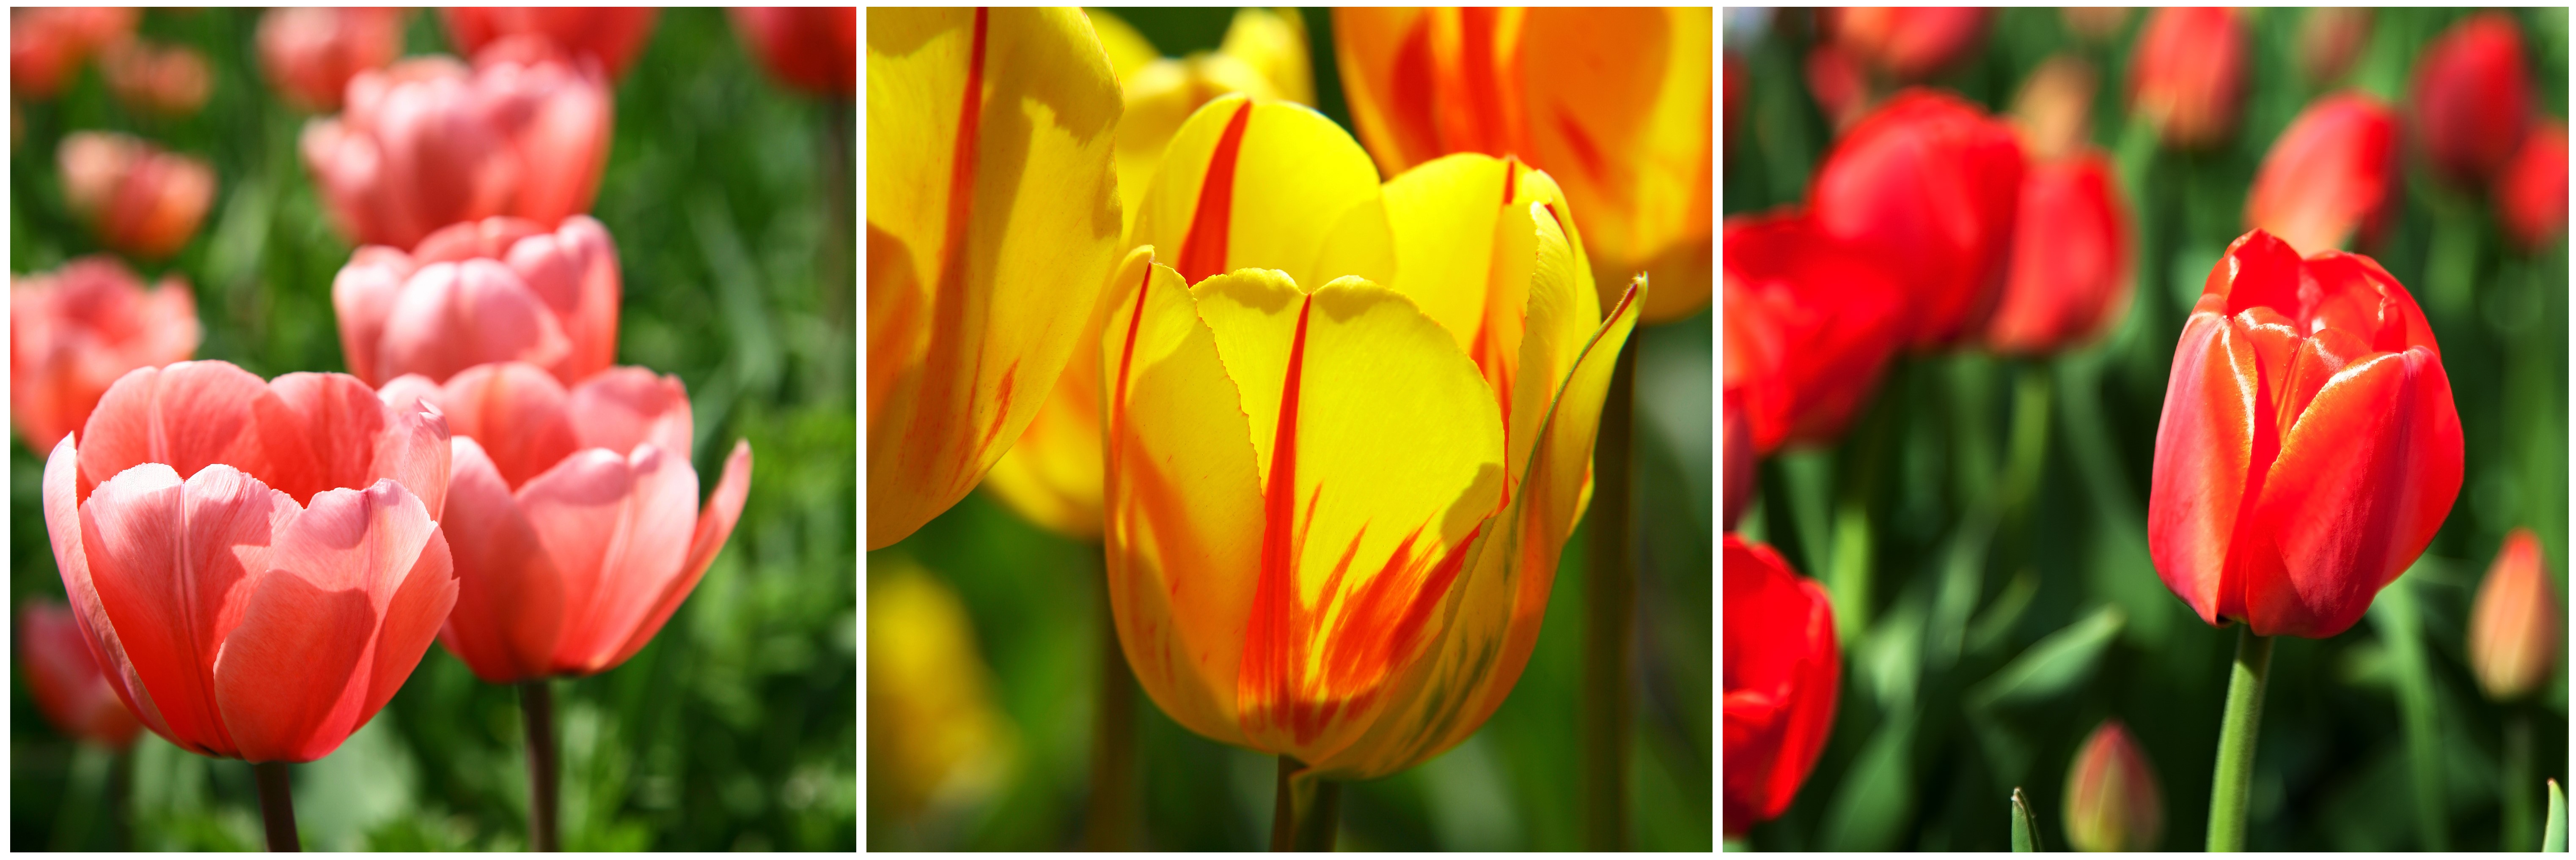 jarní výsadba, tupilány, petrklíče, primule, prvosenka, hyacinty, jak zasadit tulipán květináč, keliwood